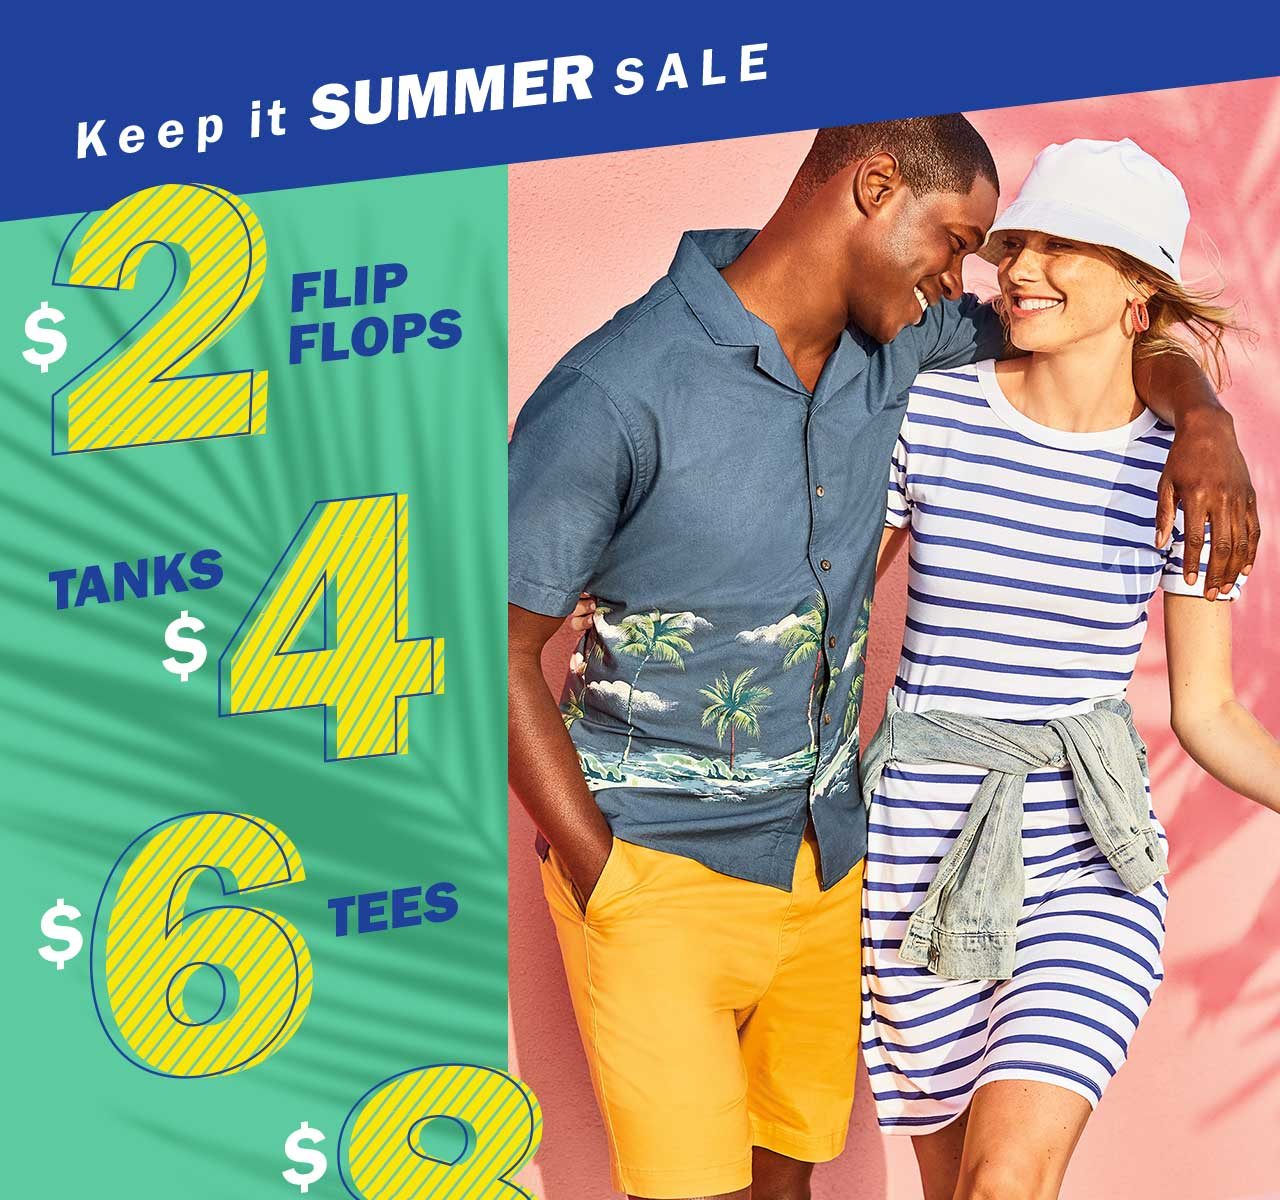 Keep it summer sale